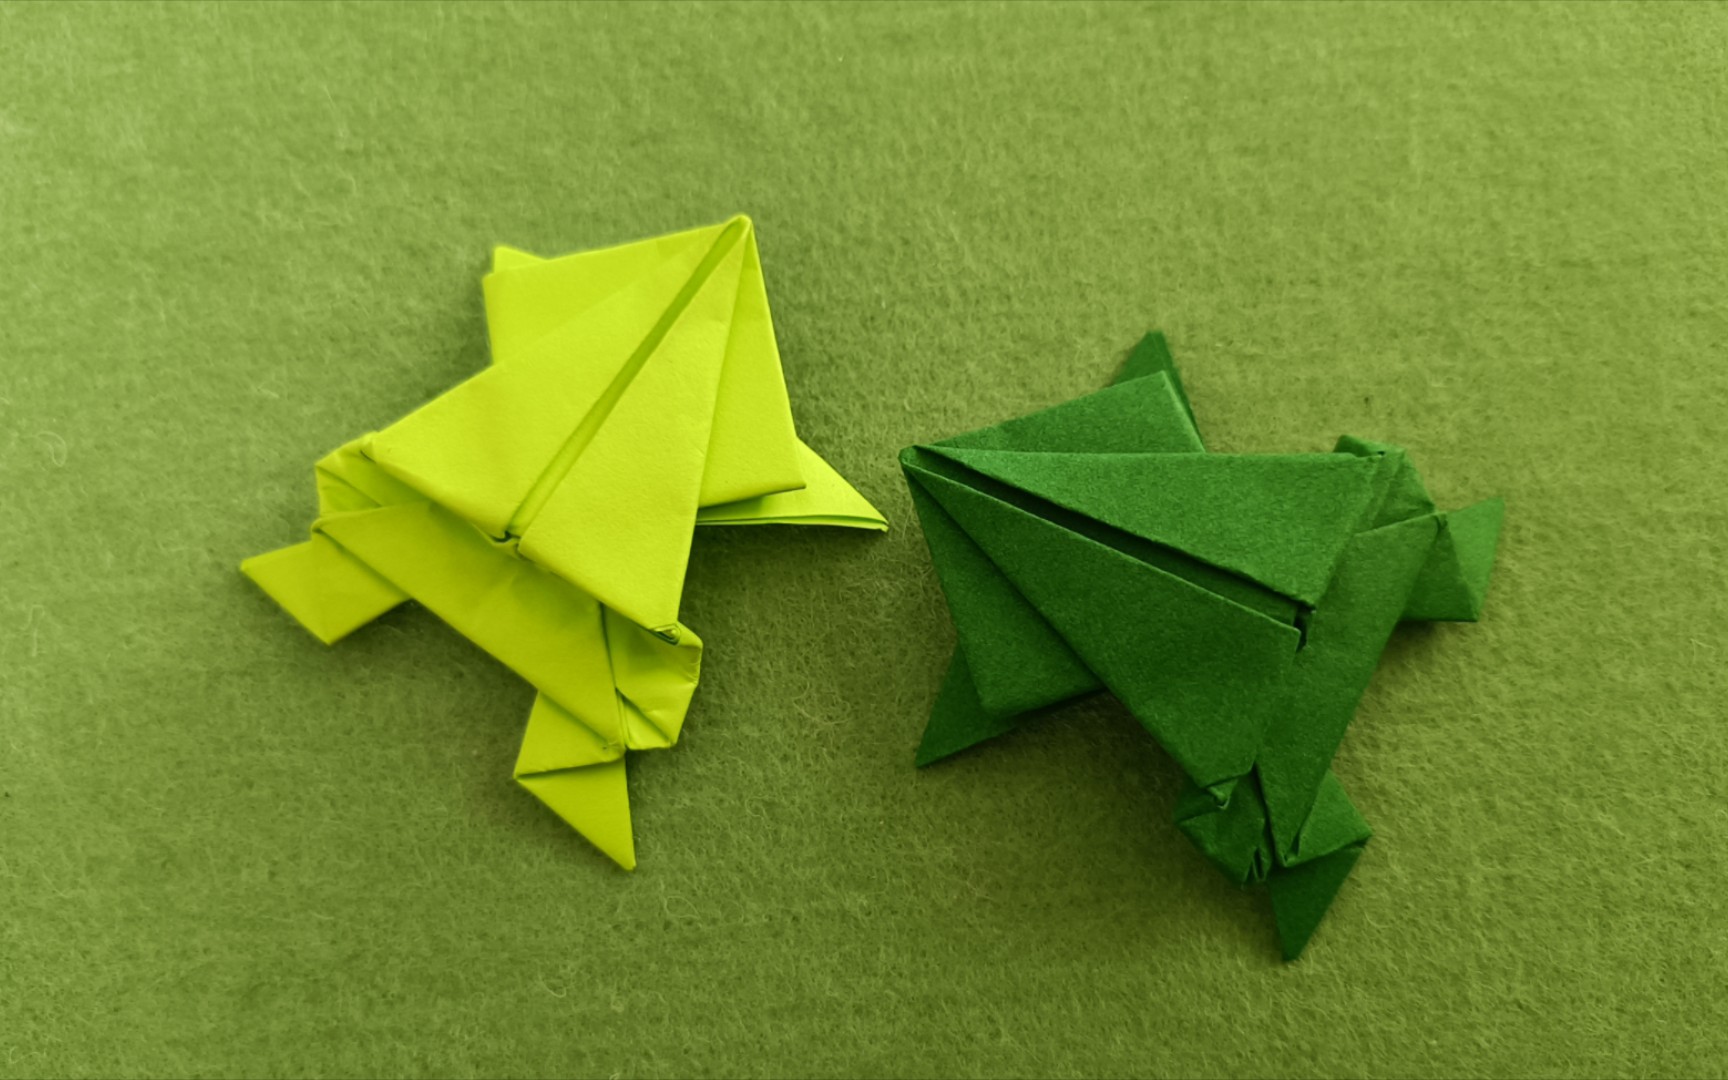 【折纸】1张纸折个可爱的小跳蛙,简单又有趣